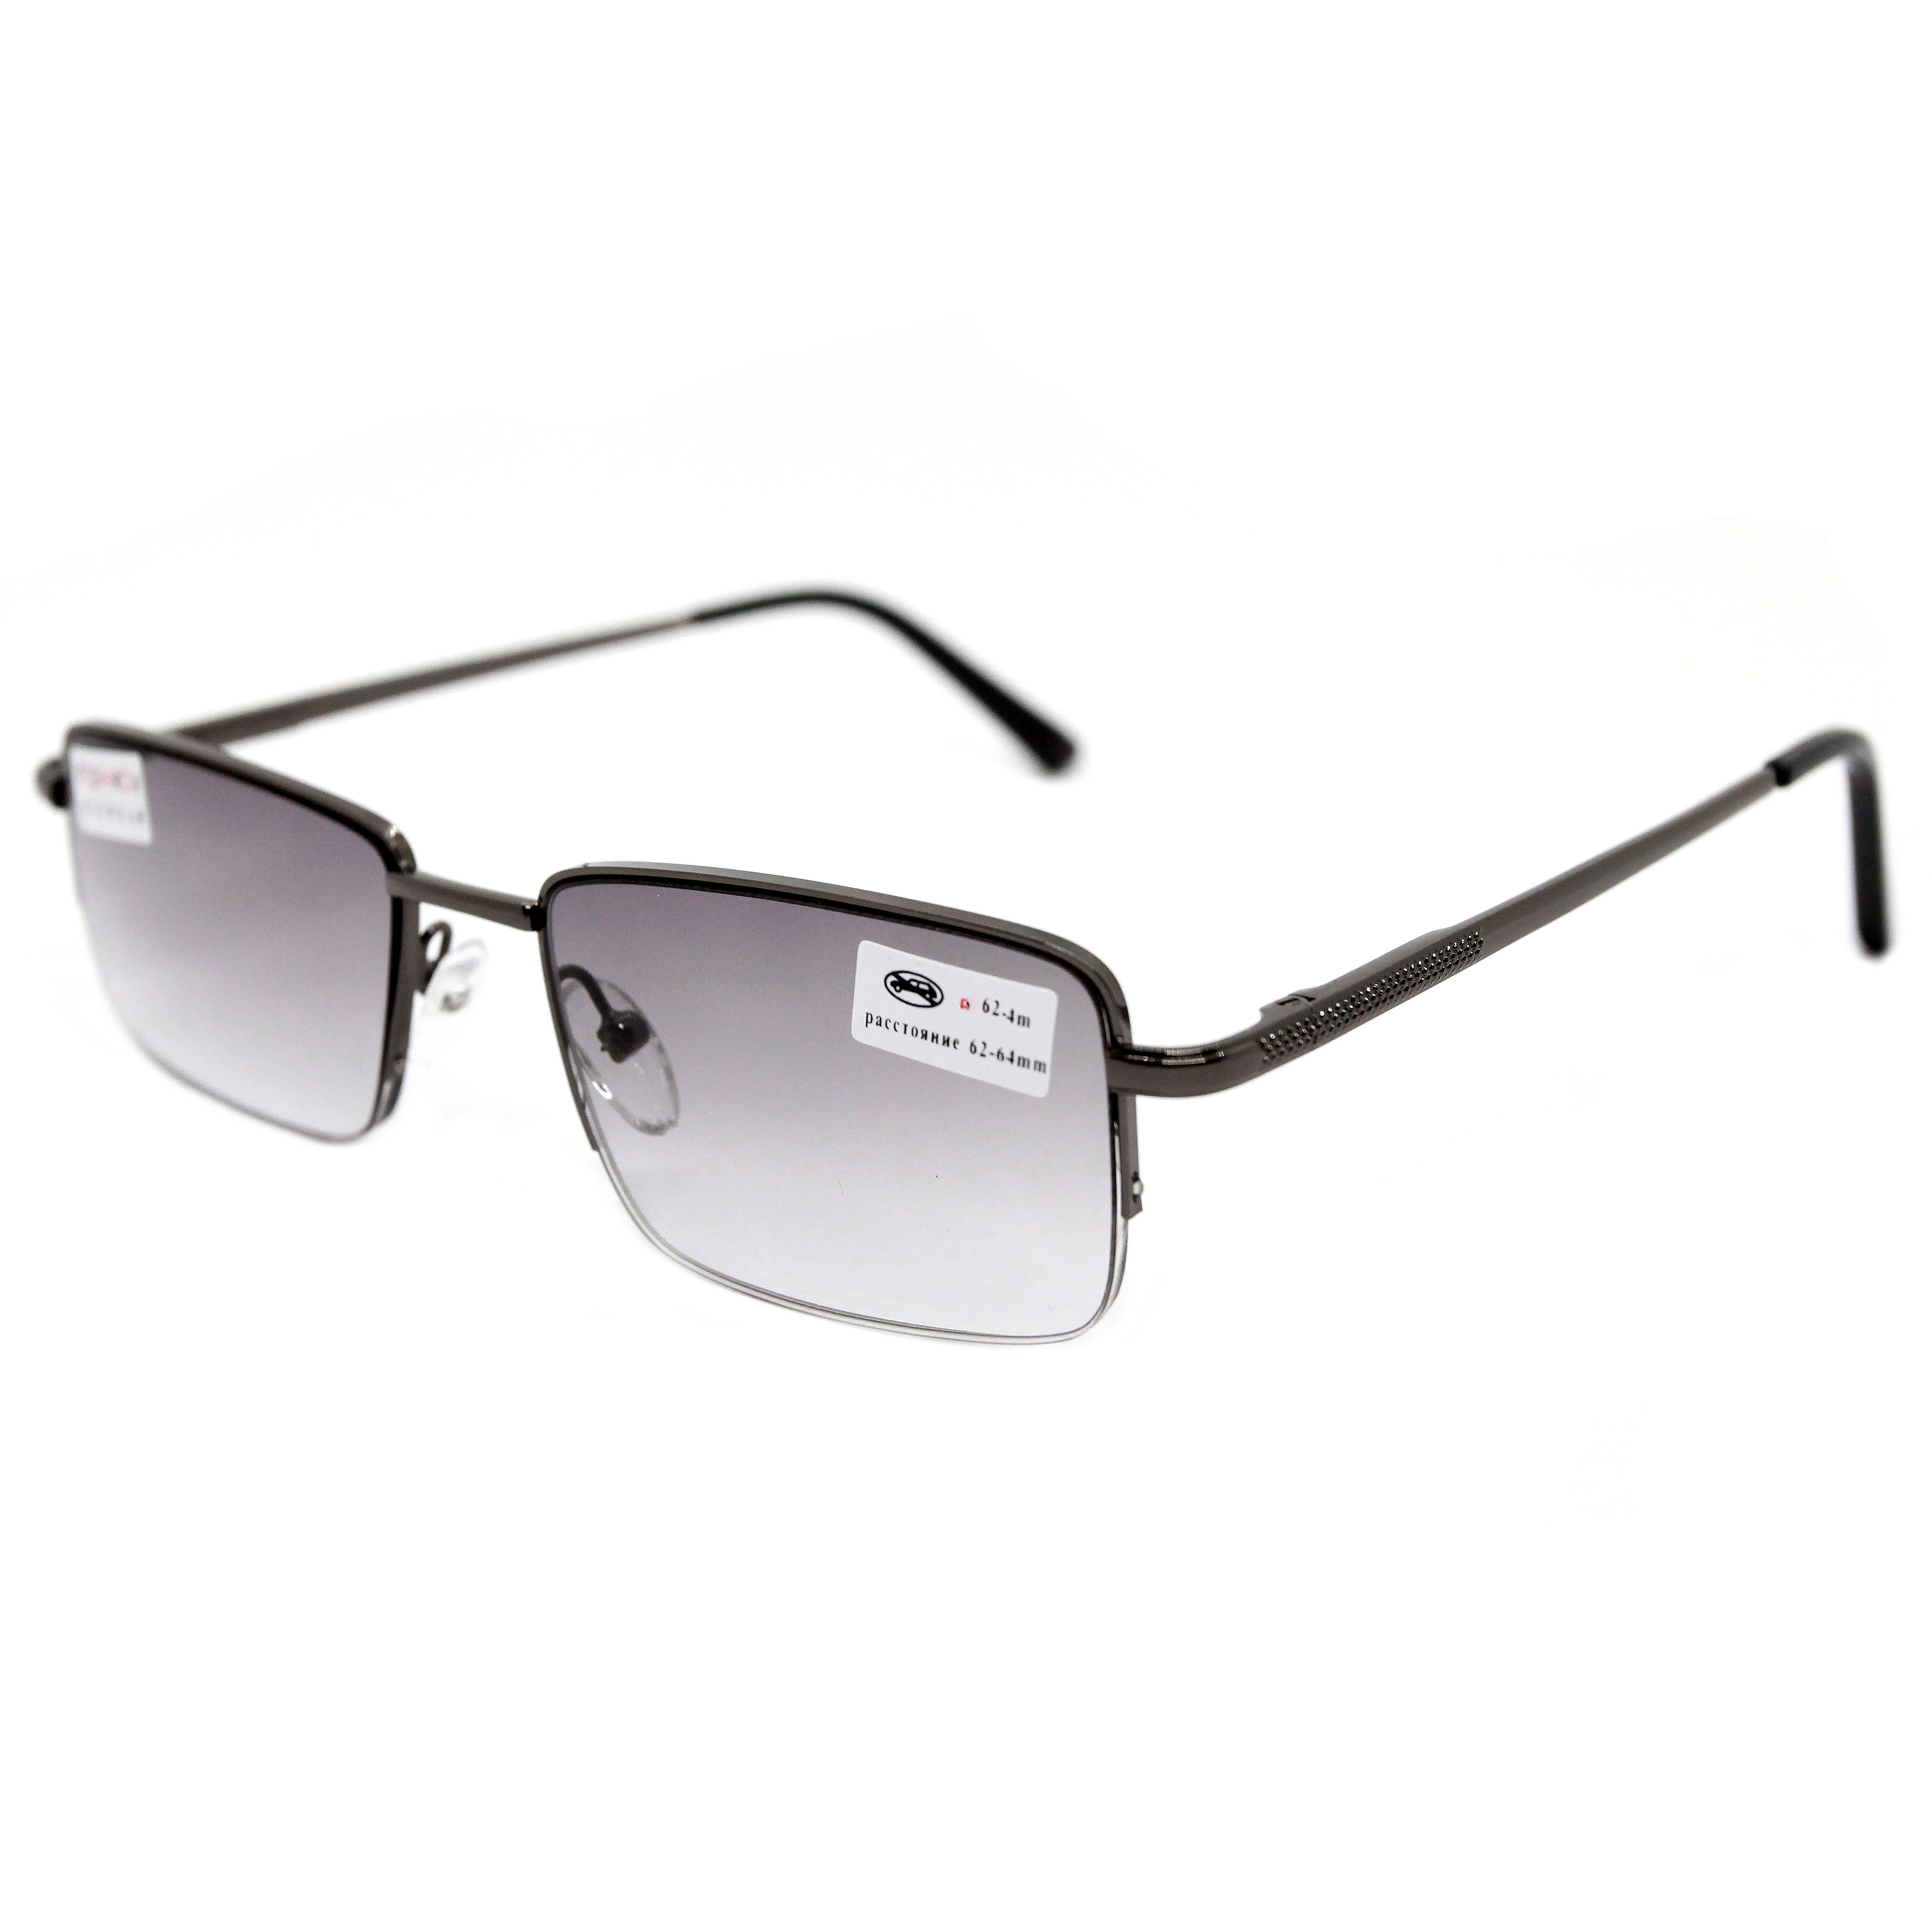 Готовые очки для зрения Fedrov 391 -2,00, без футляра, с тонировкой, черные, РЦ 62-64